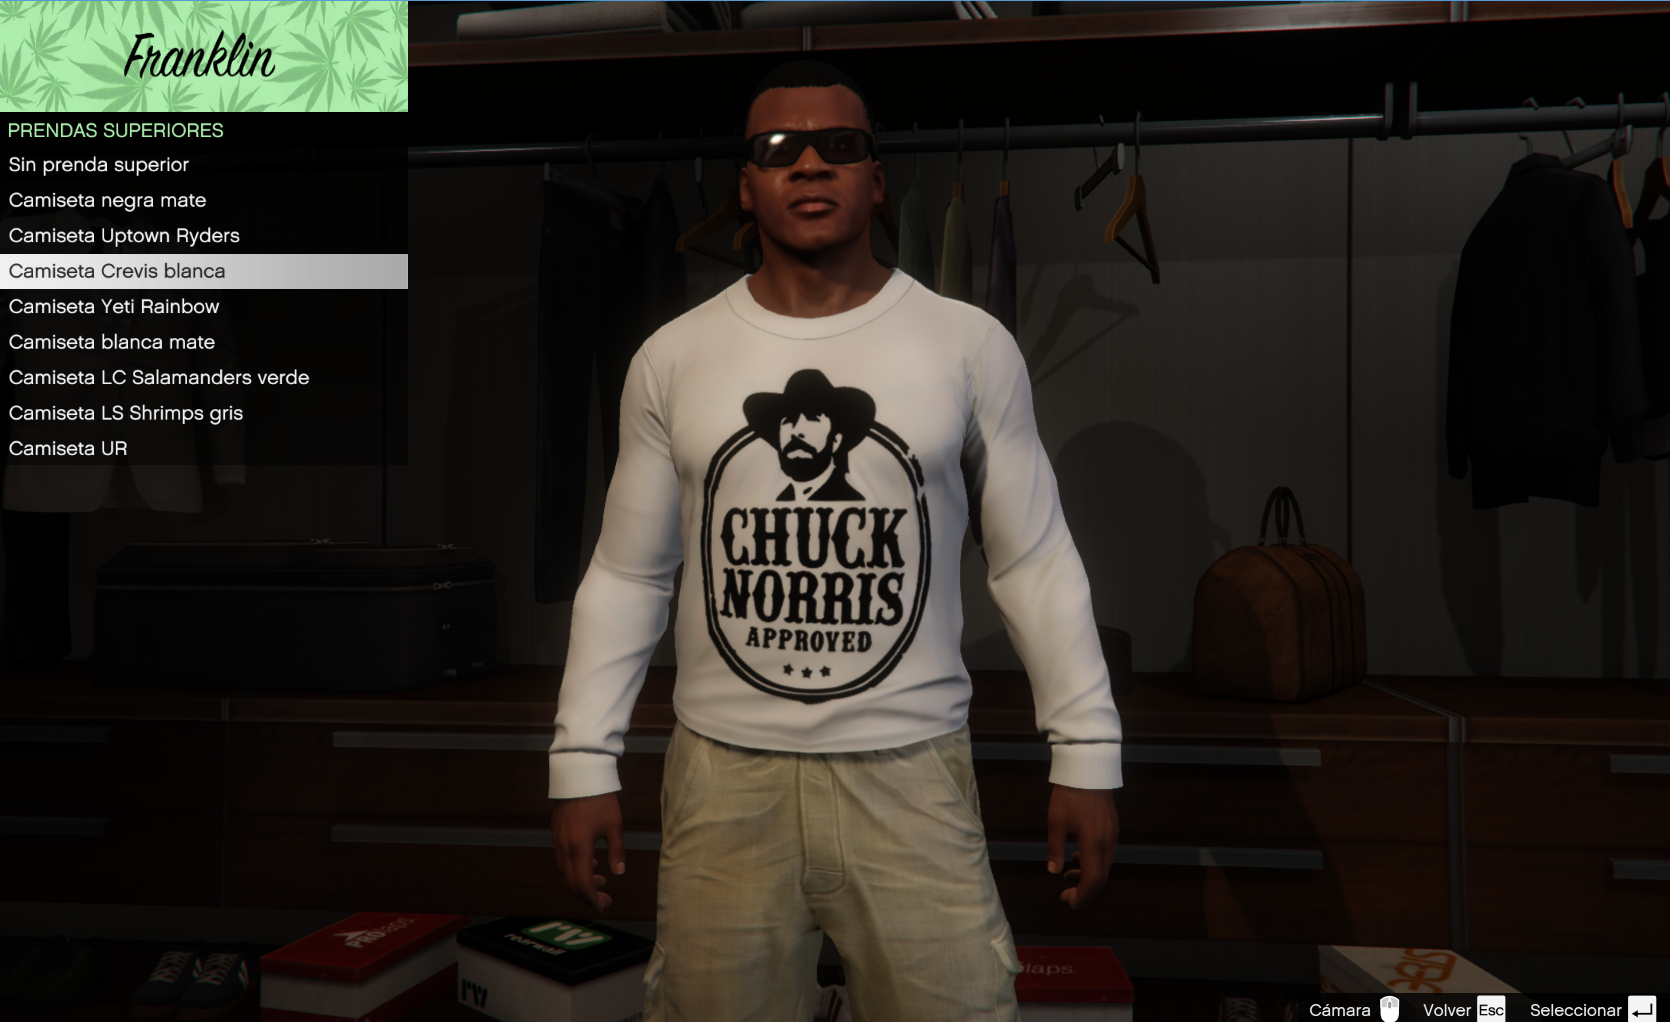 Chuck Norris Approved Shirt for Franklin - GTA5-Mods.com